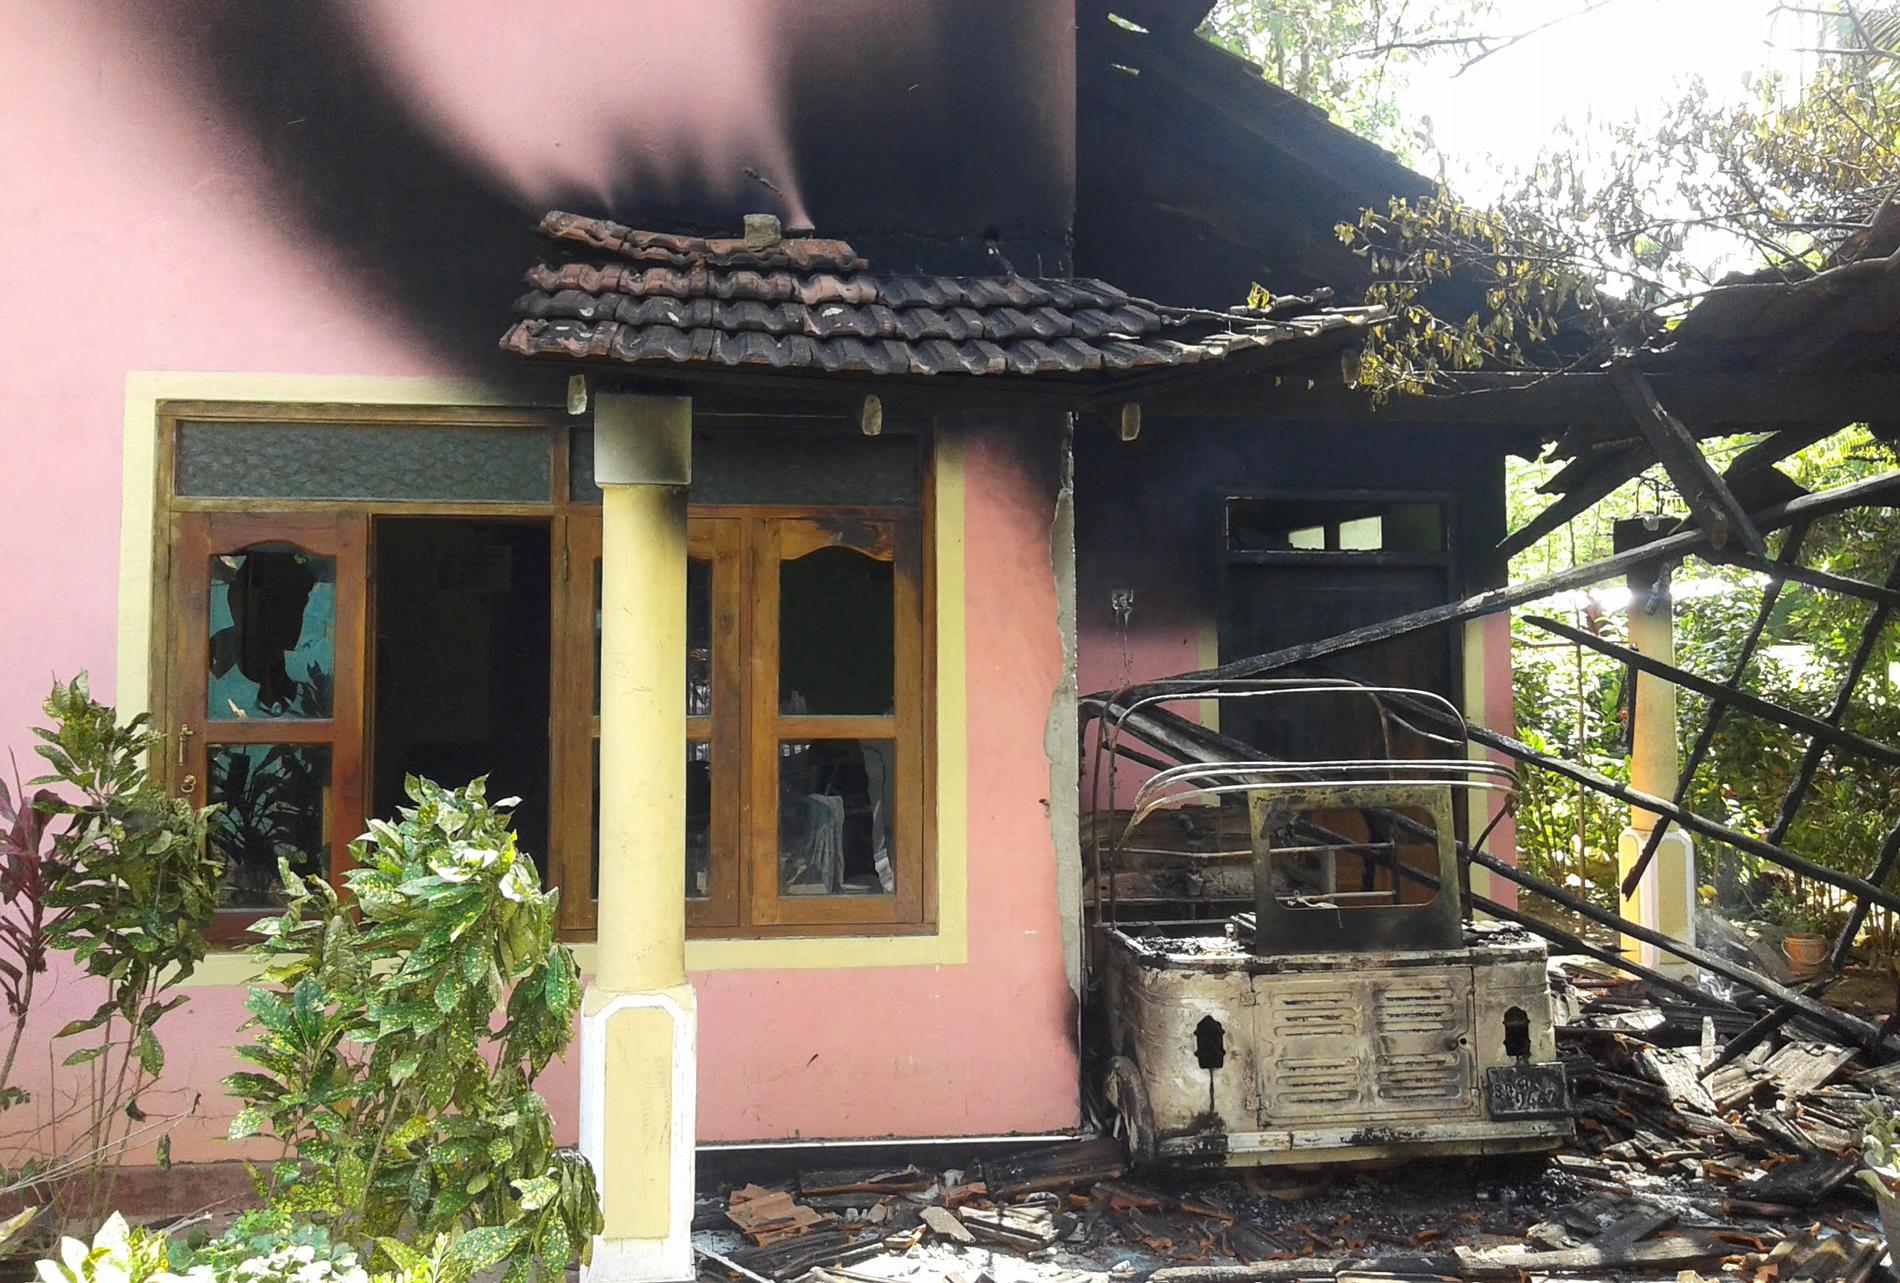 Sri Lanka skakades av rasistiskt motiverat våld även i november, här syns ett hus som vandaliserades nära Galle. Arkivbild.